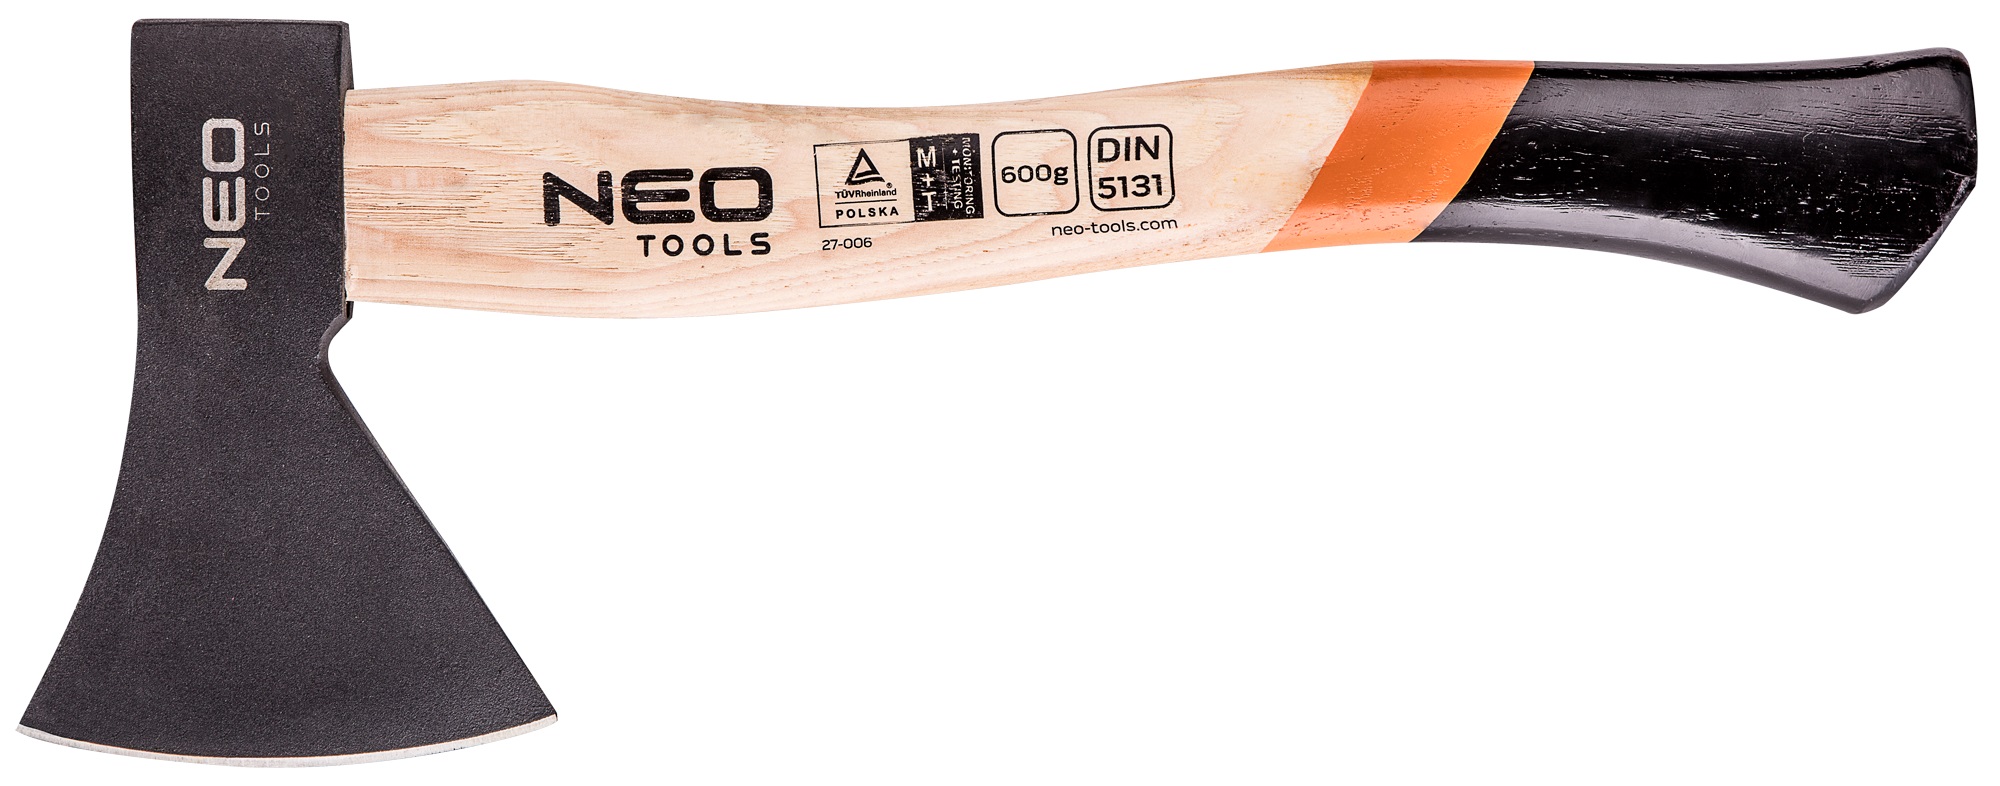 Колун Neo Tools 27-006